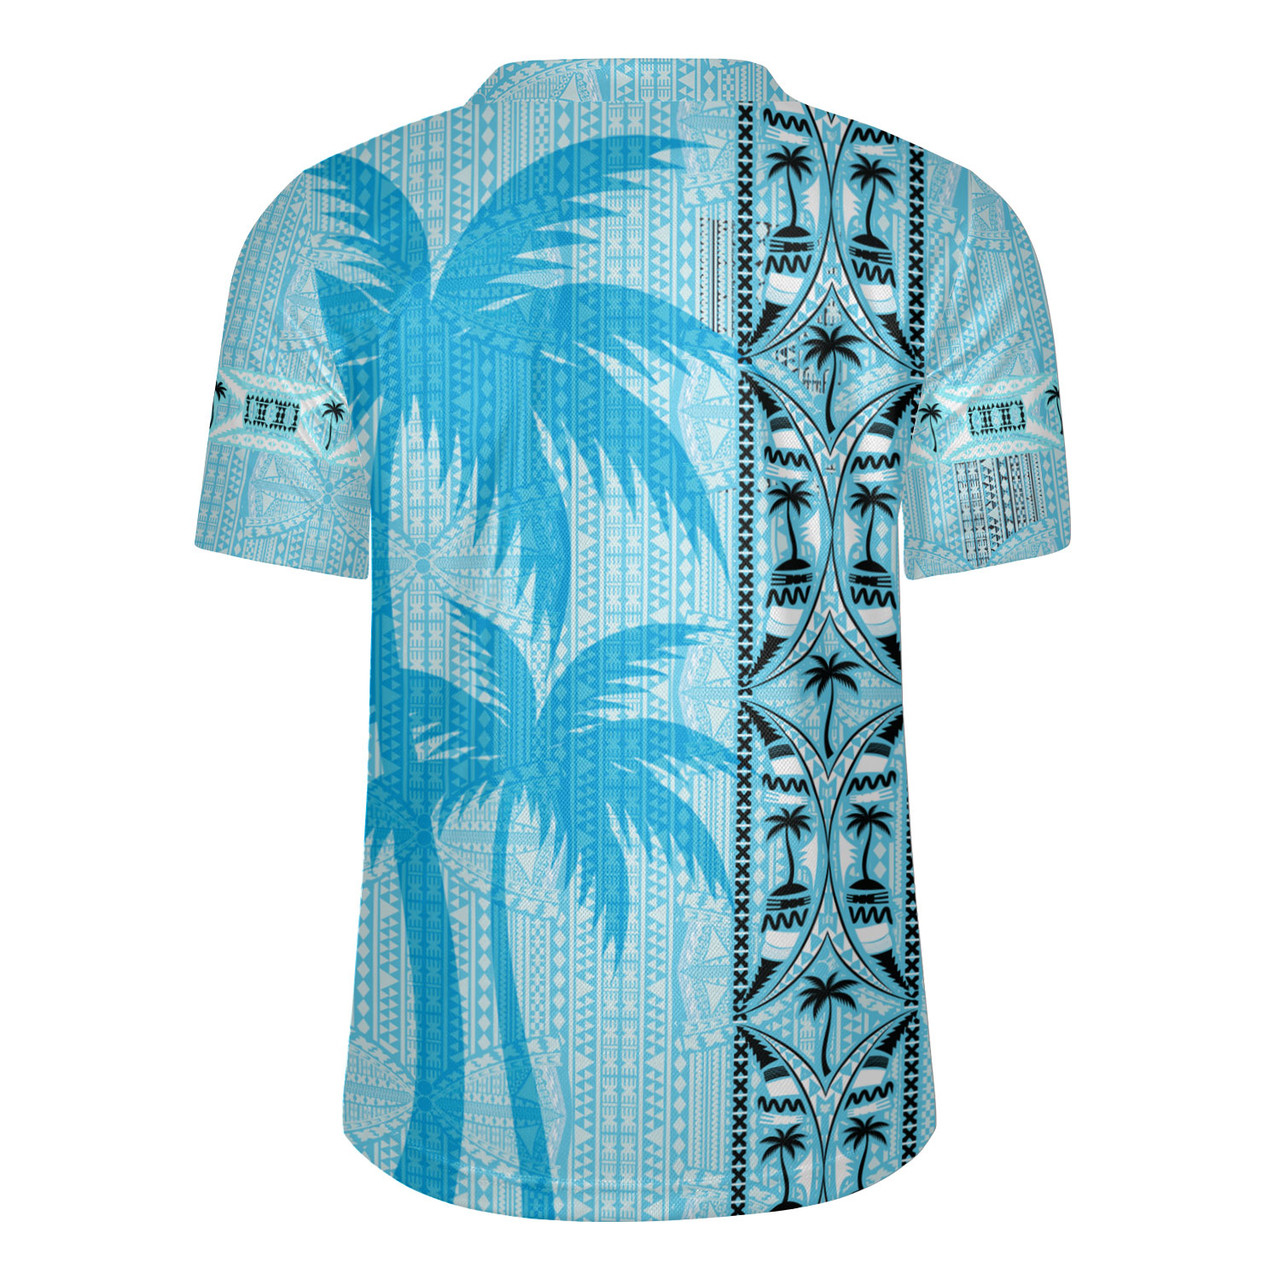 Fiji Rugby Jersey Bula Vinaka Tapa Palms Designs